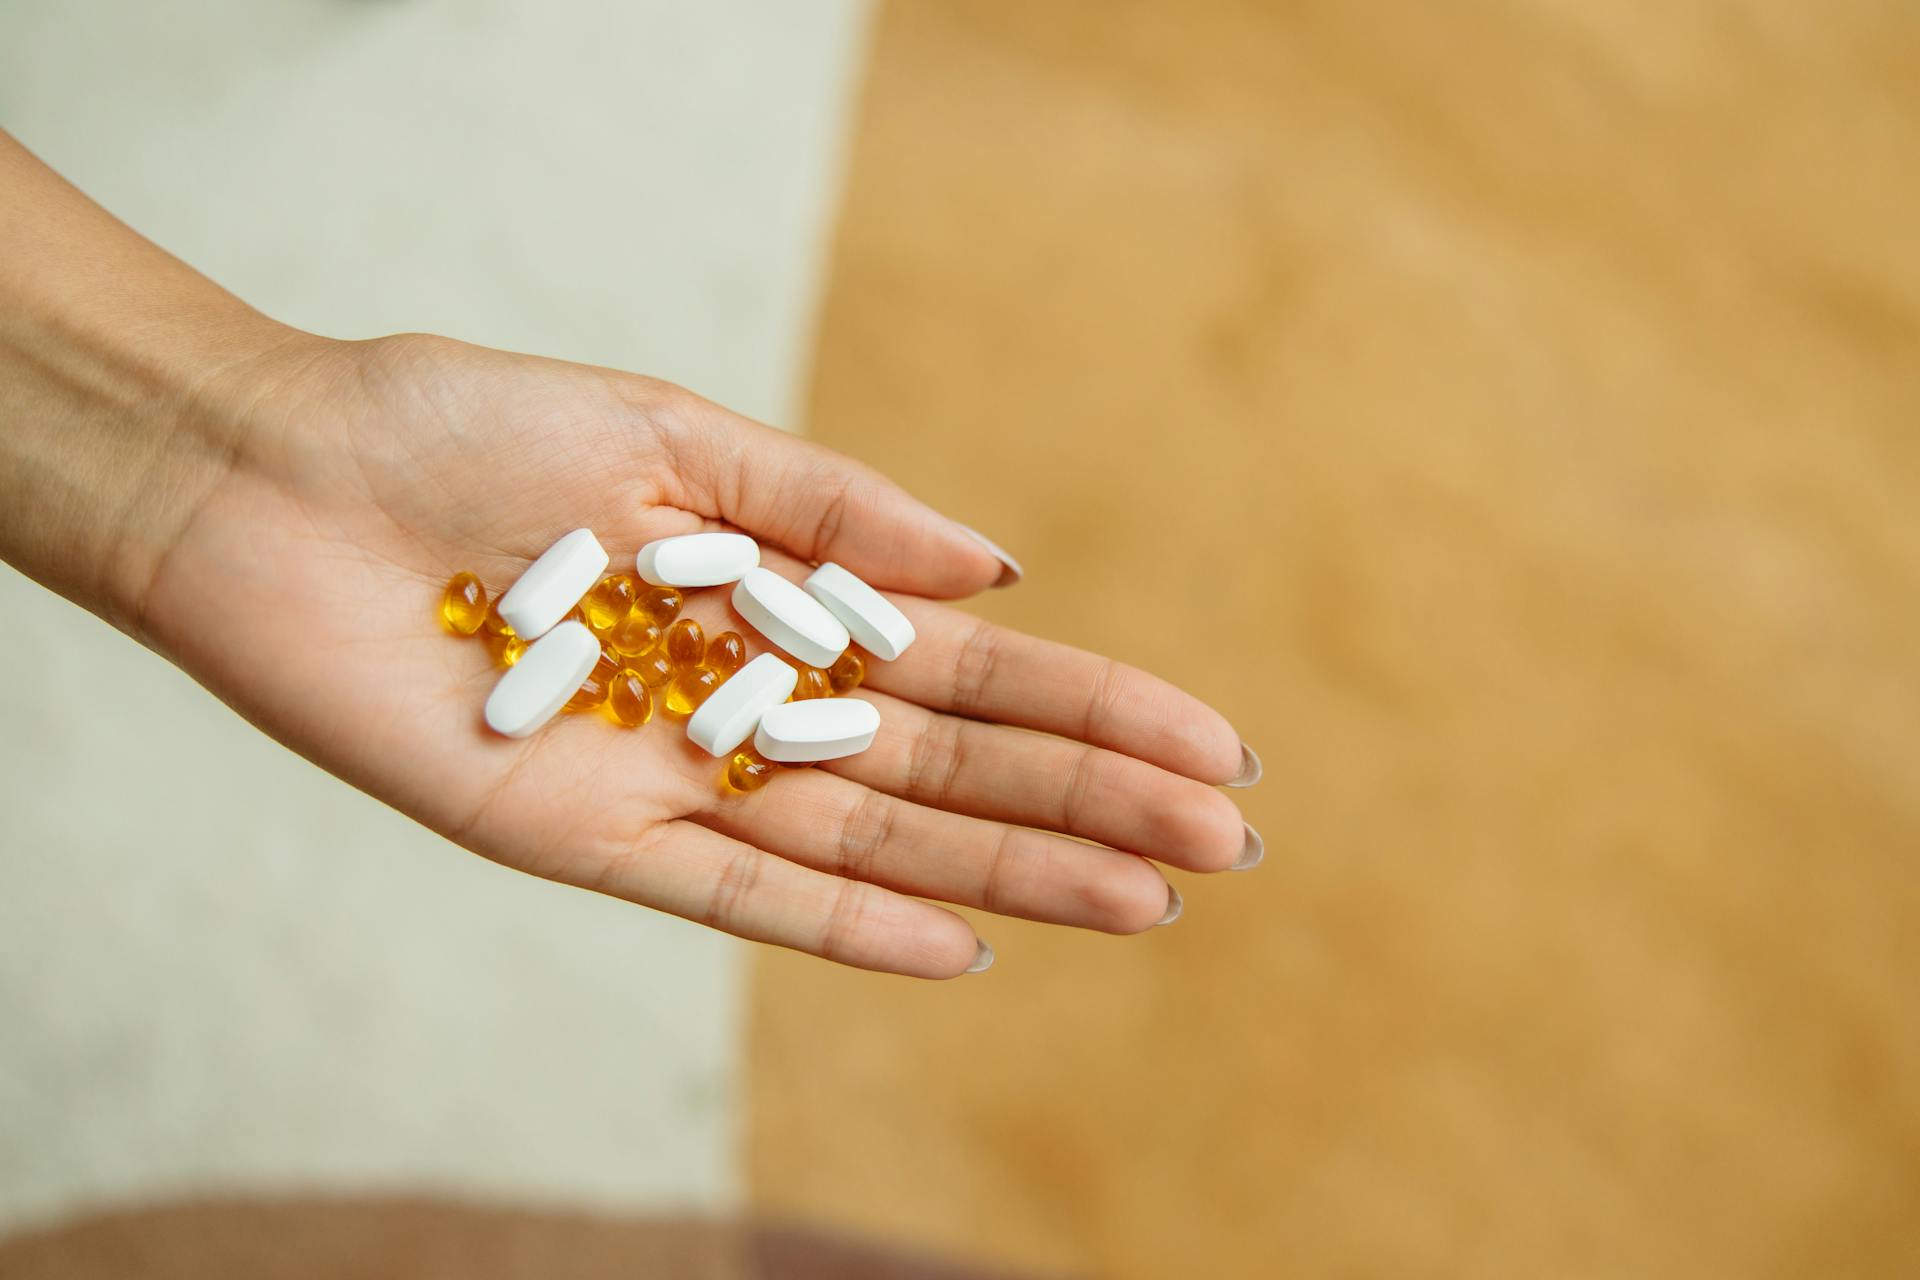 Persona con pastillas en la mano. Imagen con fines ilustrativos | Foto: Pexels